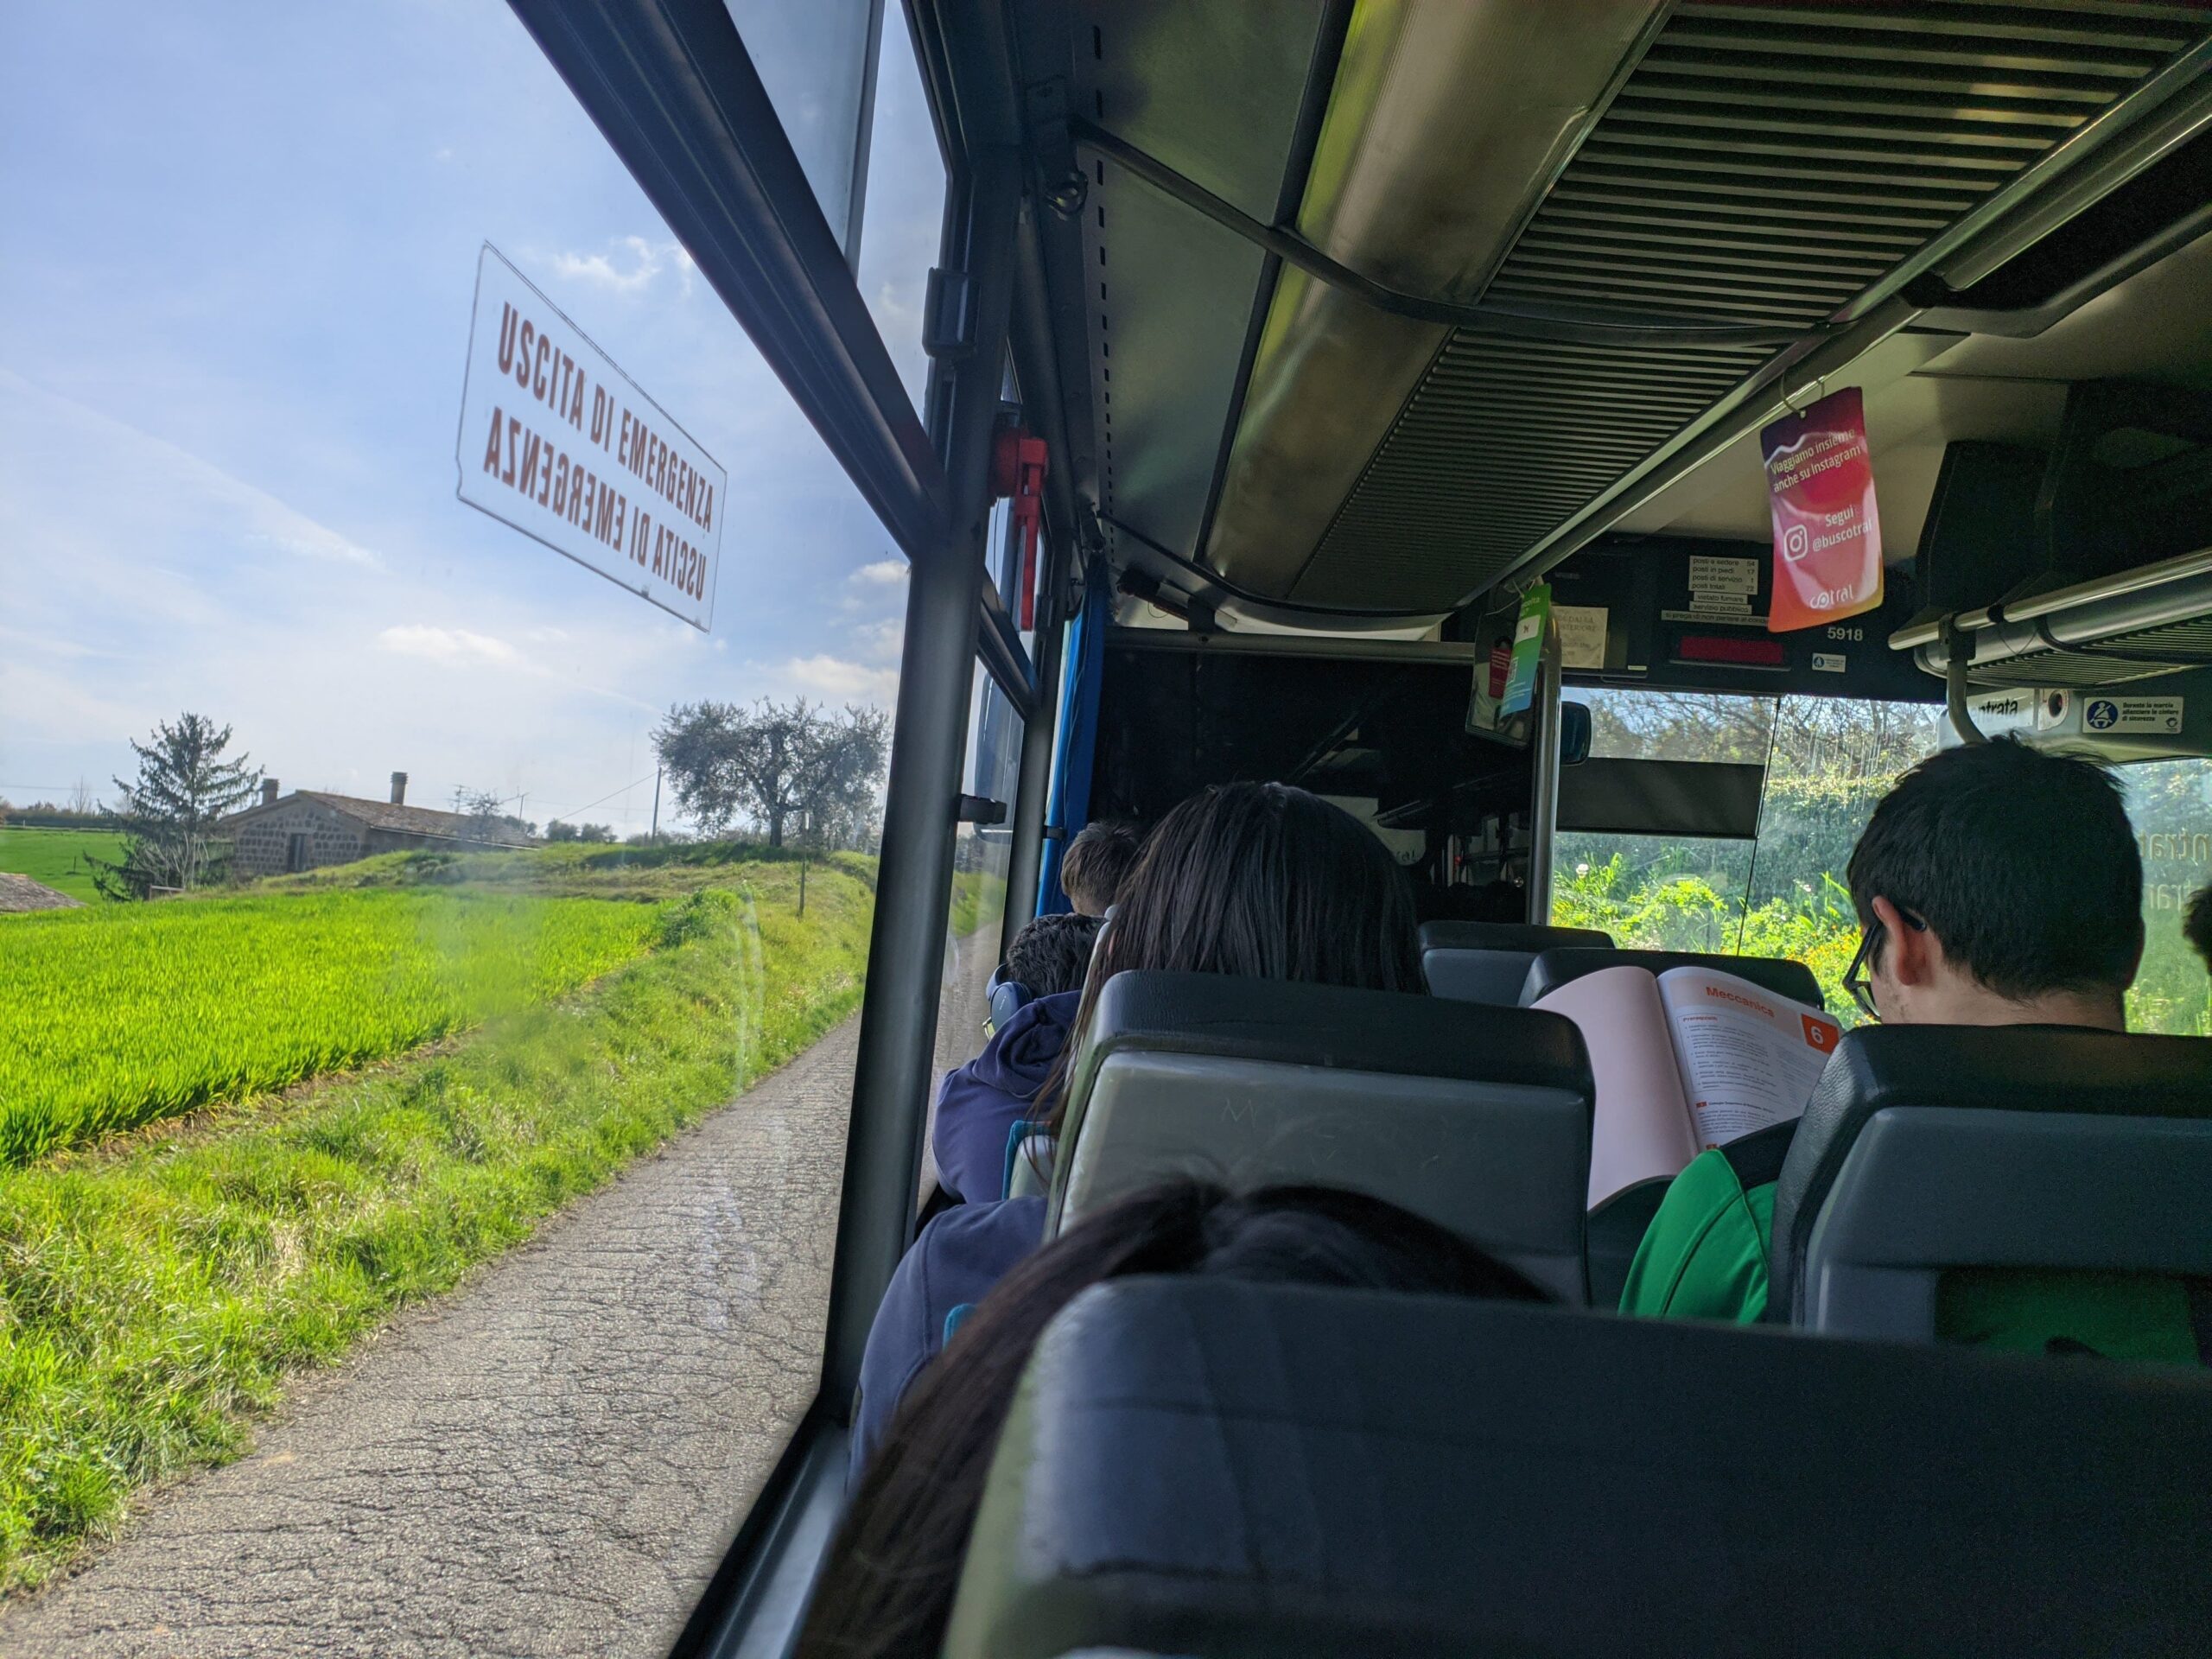 Foto tirada dentro de um ônibus, é possível ver algumas pessoas sentadas, uma lendo, e a paisagem verde para fora.